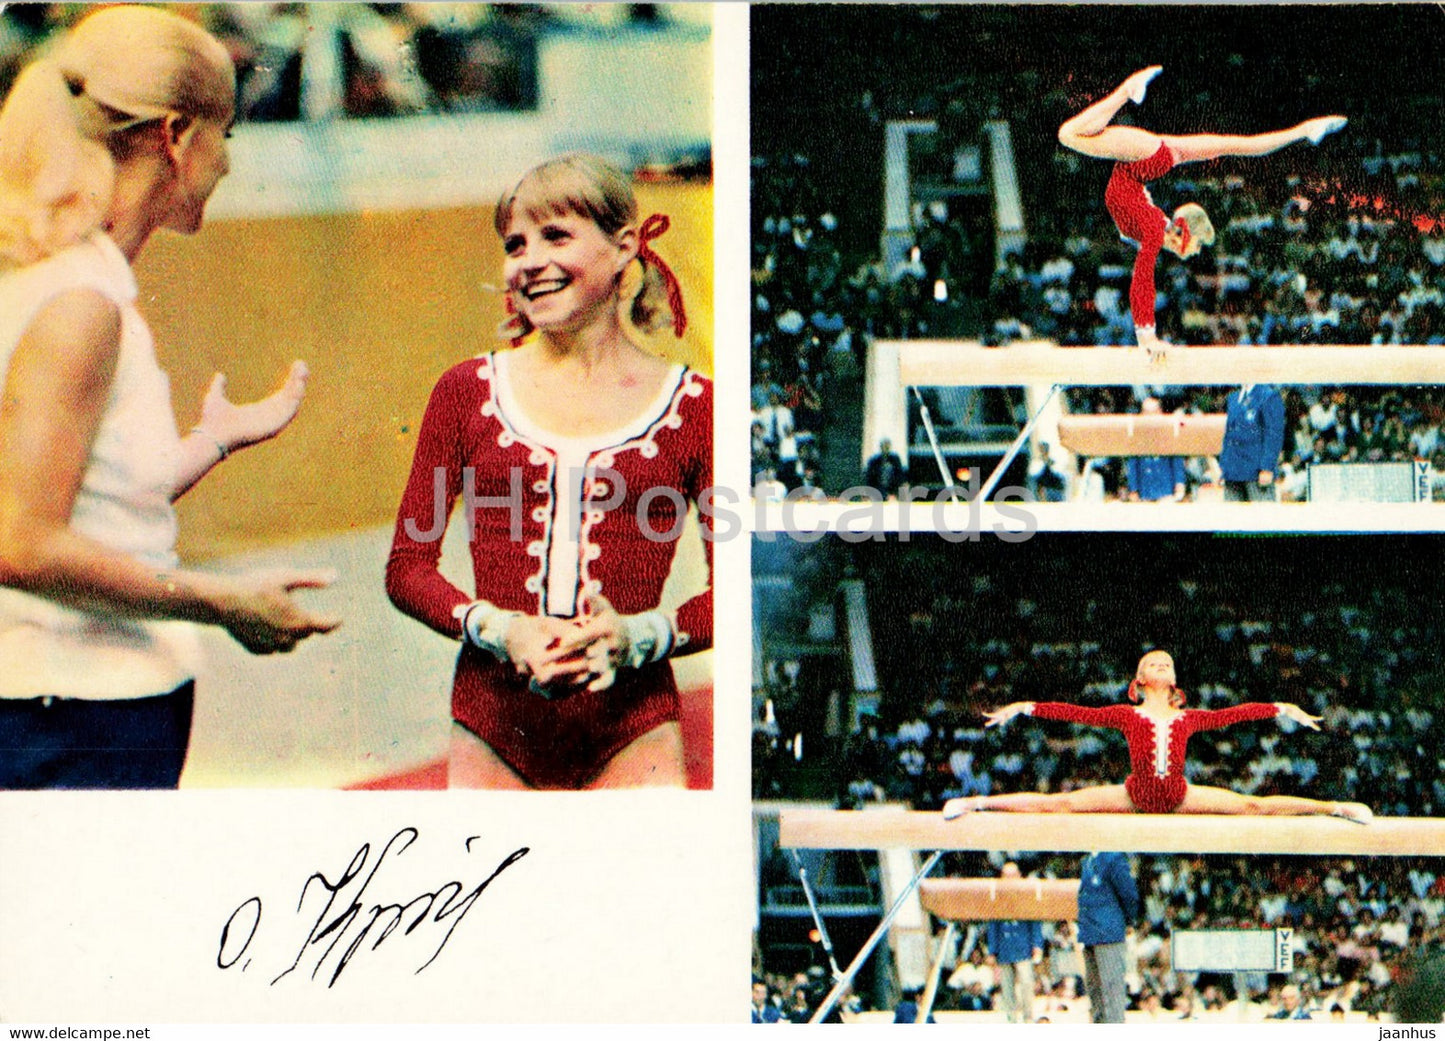 Olga Korbut - gymnastics - Soviet champions - sports - 1974 - Russia USSR - unused - JH Postcards